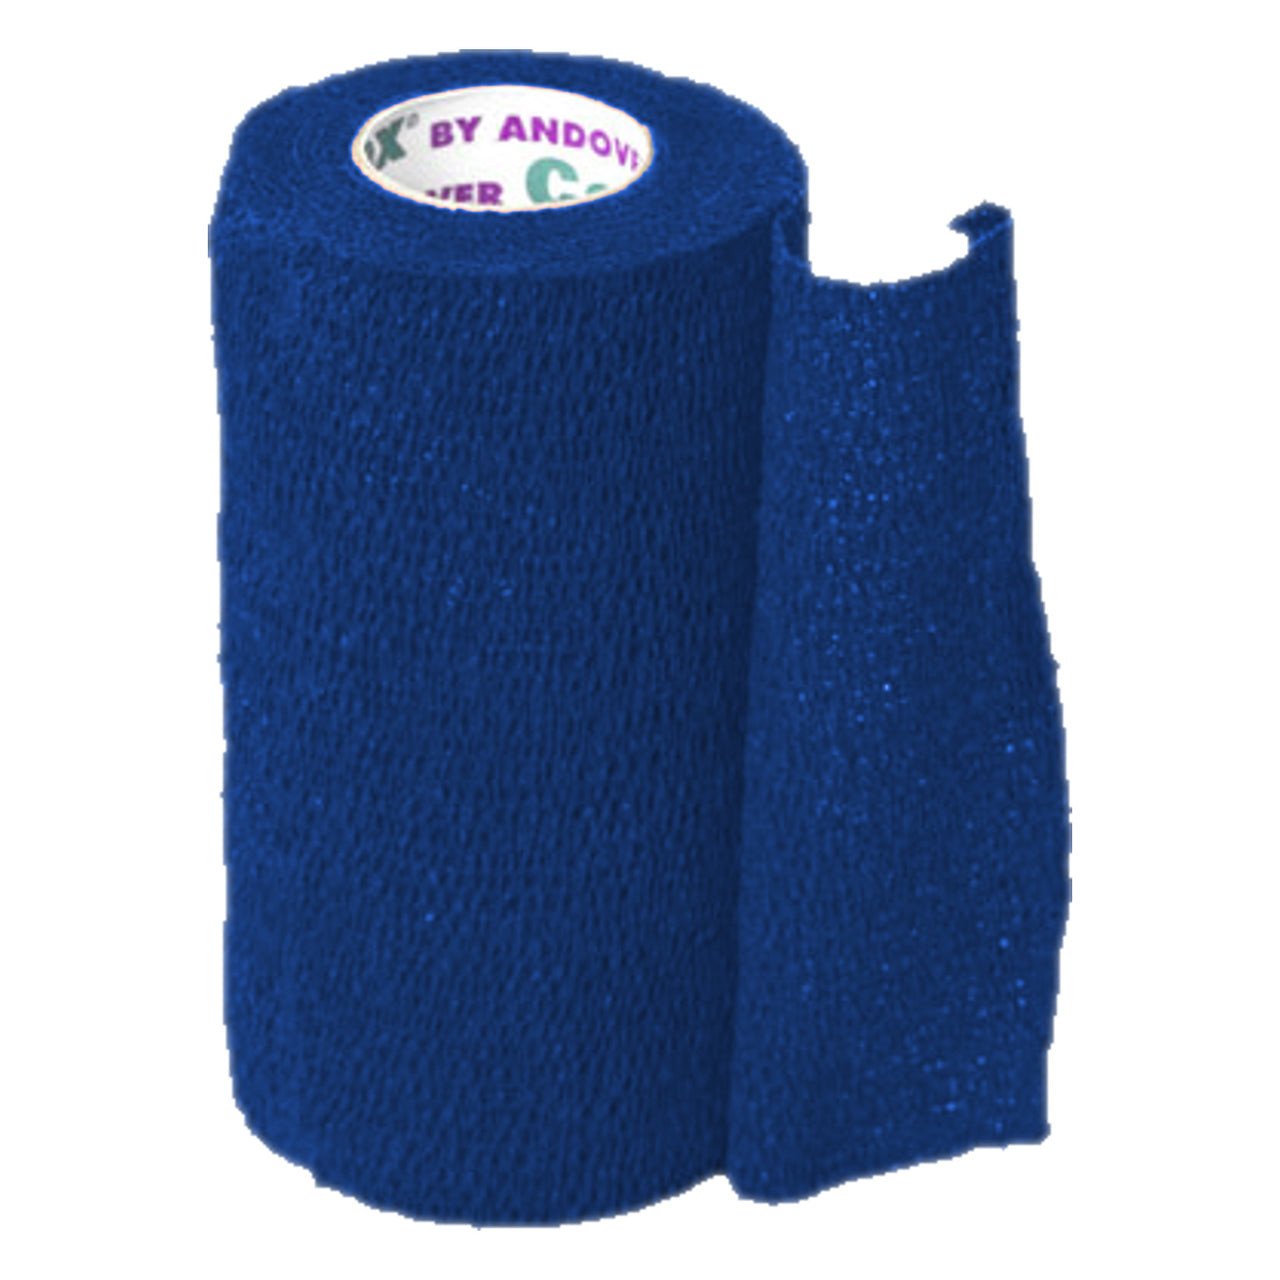 Andover Coflexvet 4X 15 Bandage (Blue) - Blue - Wound Dressing Andover - Canada